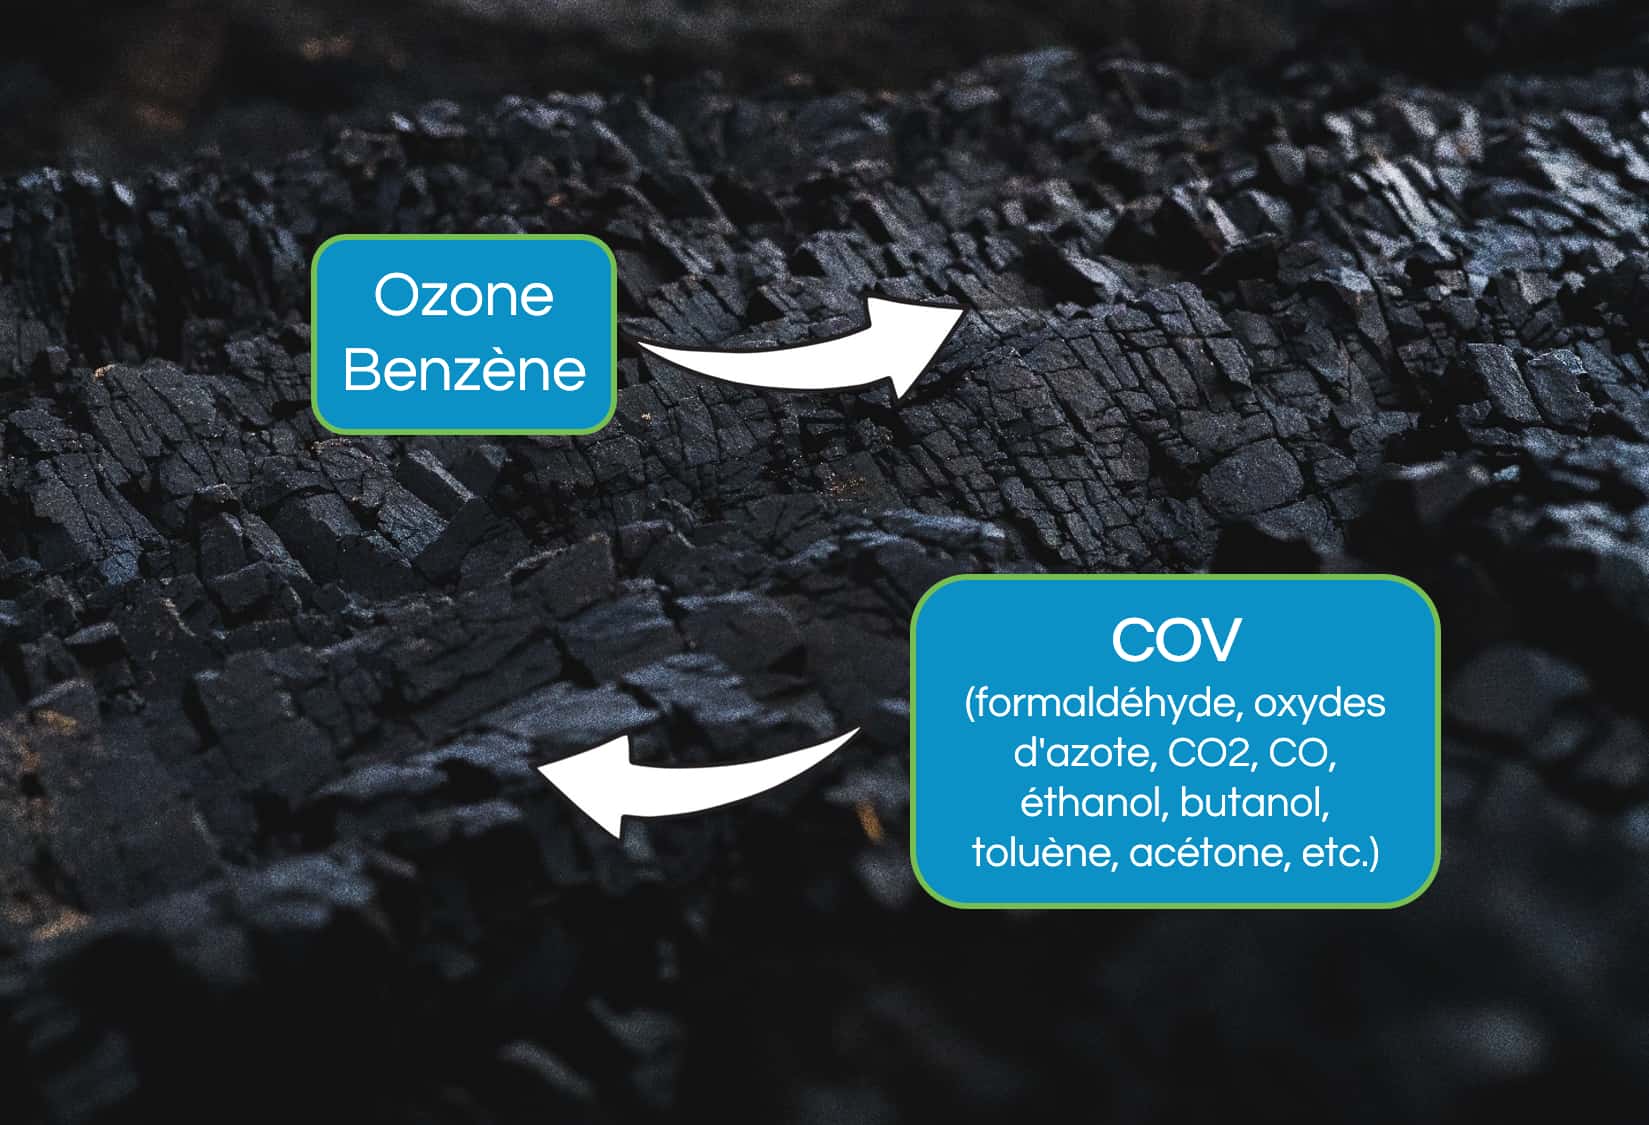 Comment fonctionne la filtration au charbon pour adsorber les COV